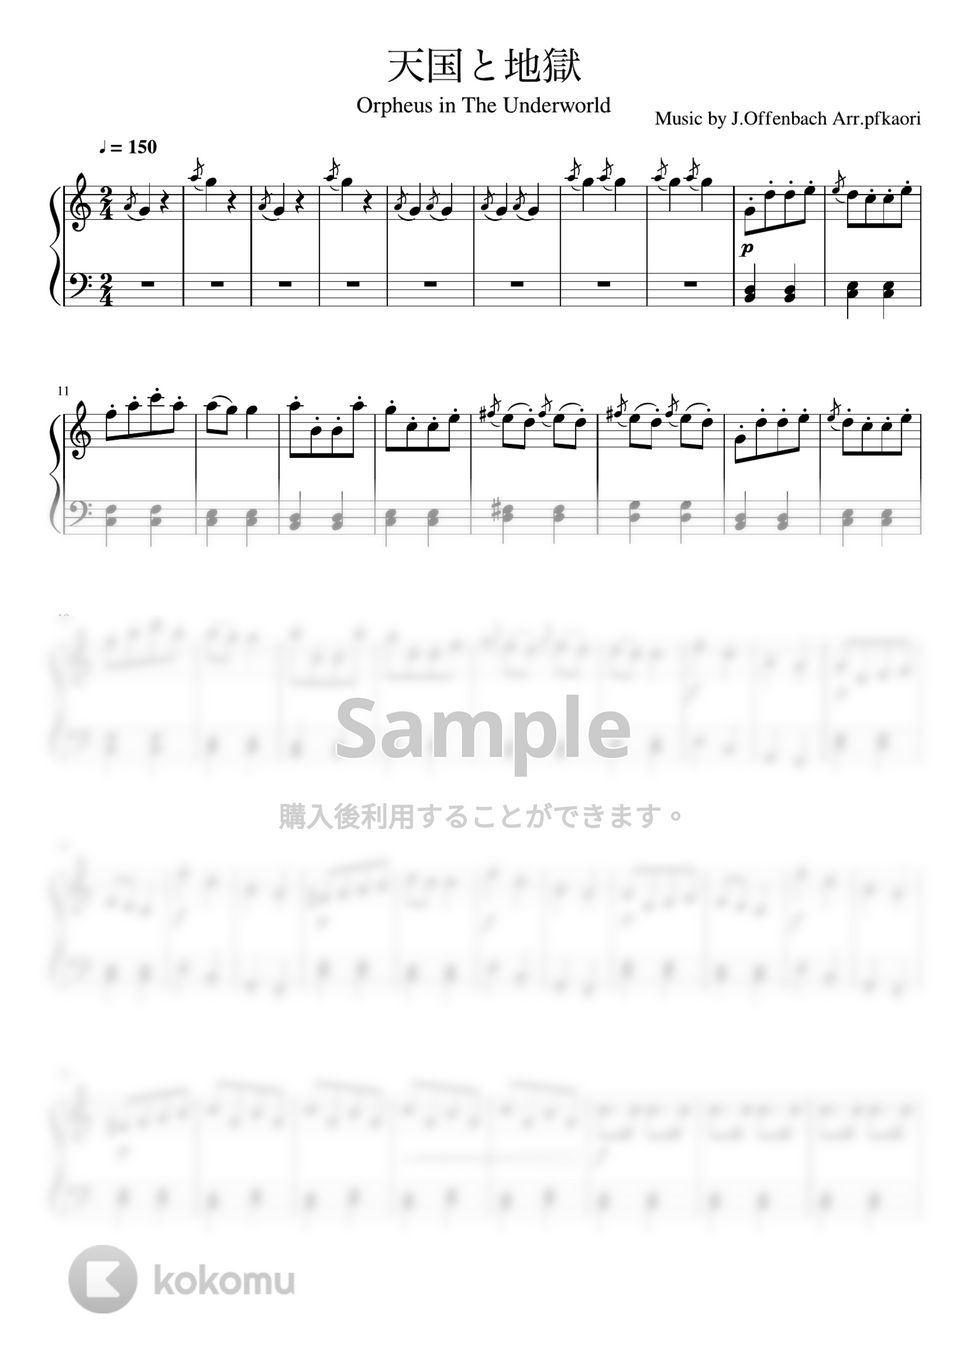 オッフェンバック - 天国と地獄より序曲 (Cdur・ピアノソロ初級) by pfkaori